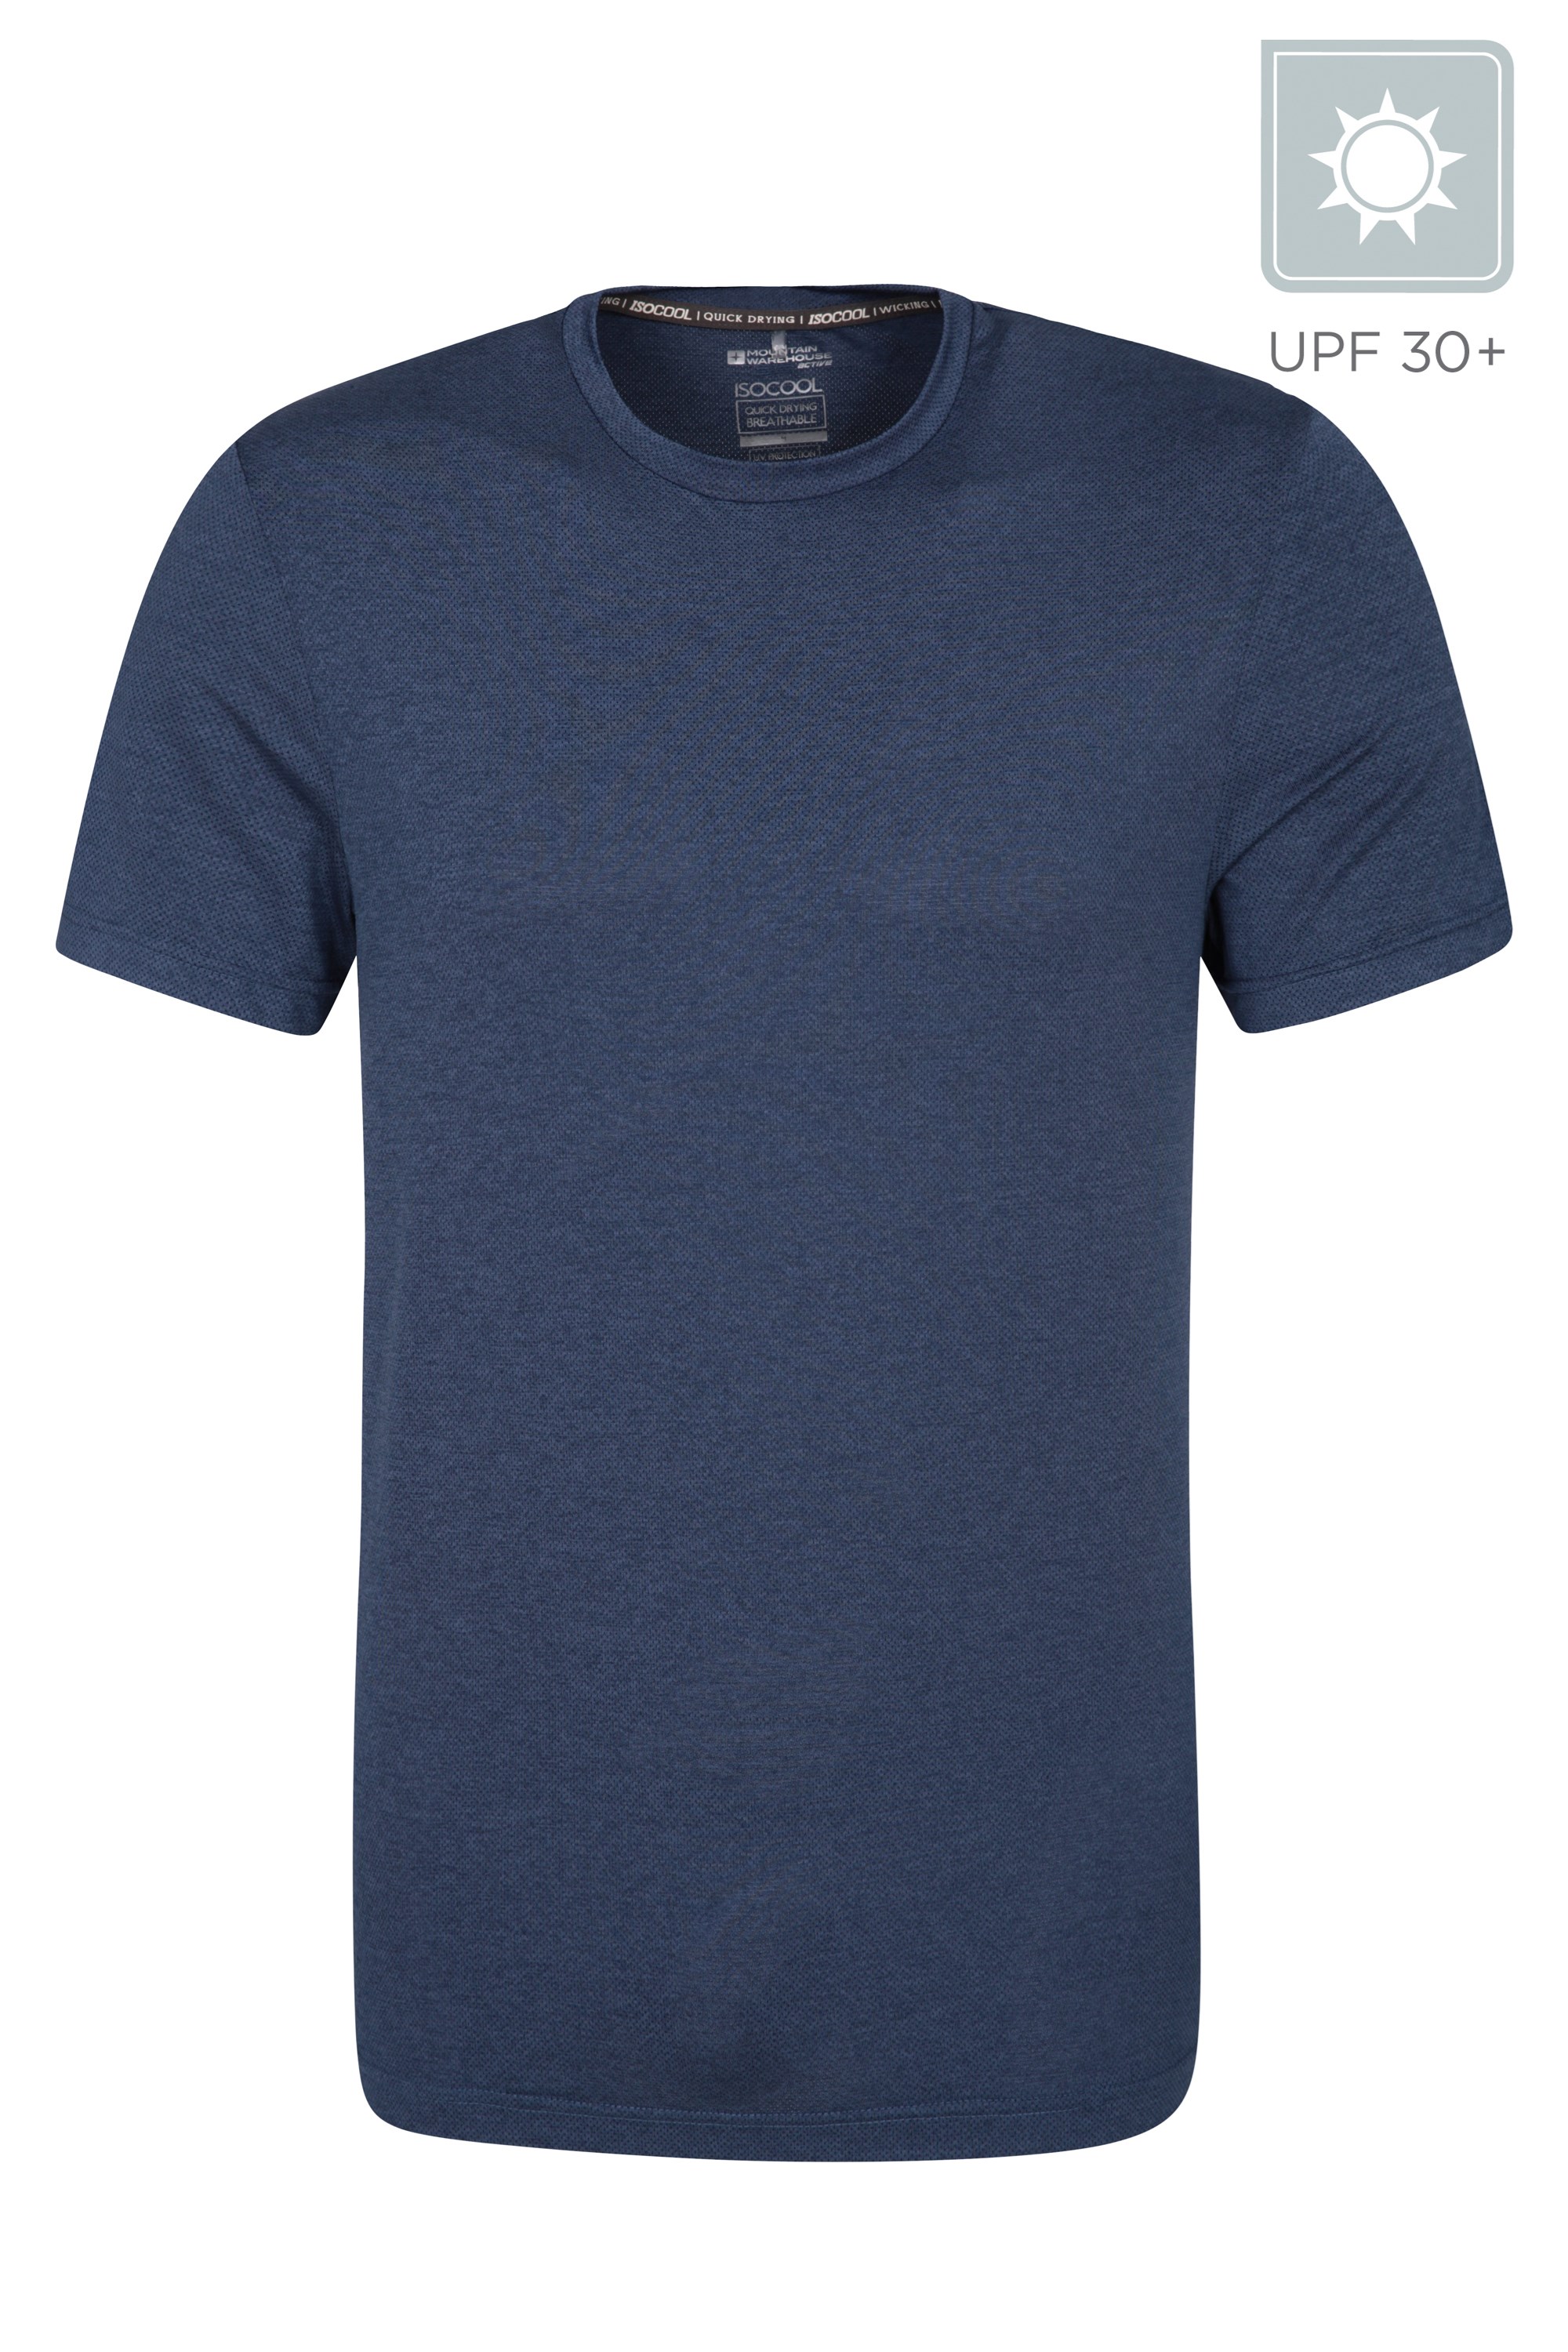 T-Shirt IsoCool Hommes Lightweight - Bleu Foncé